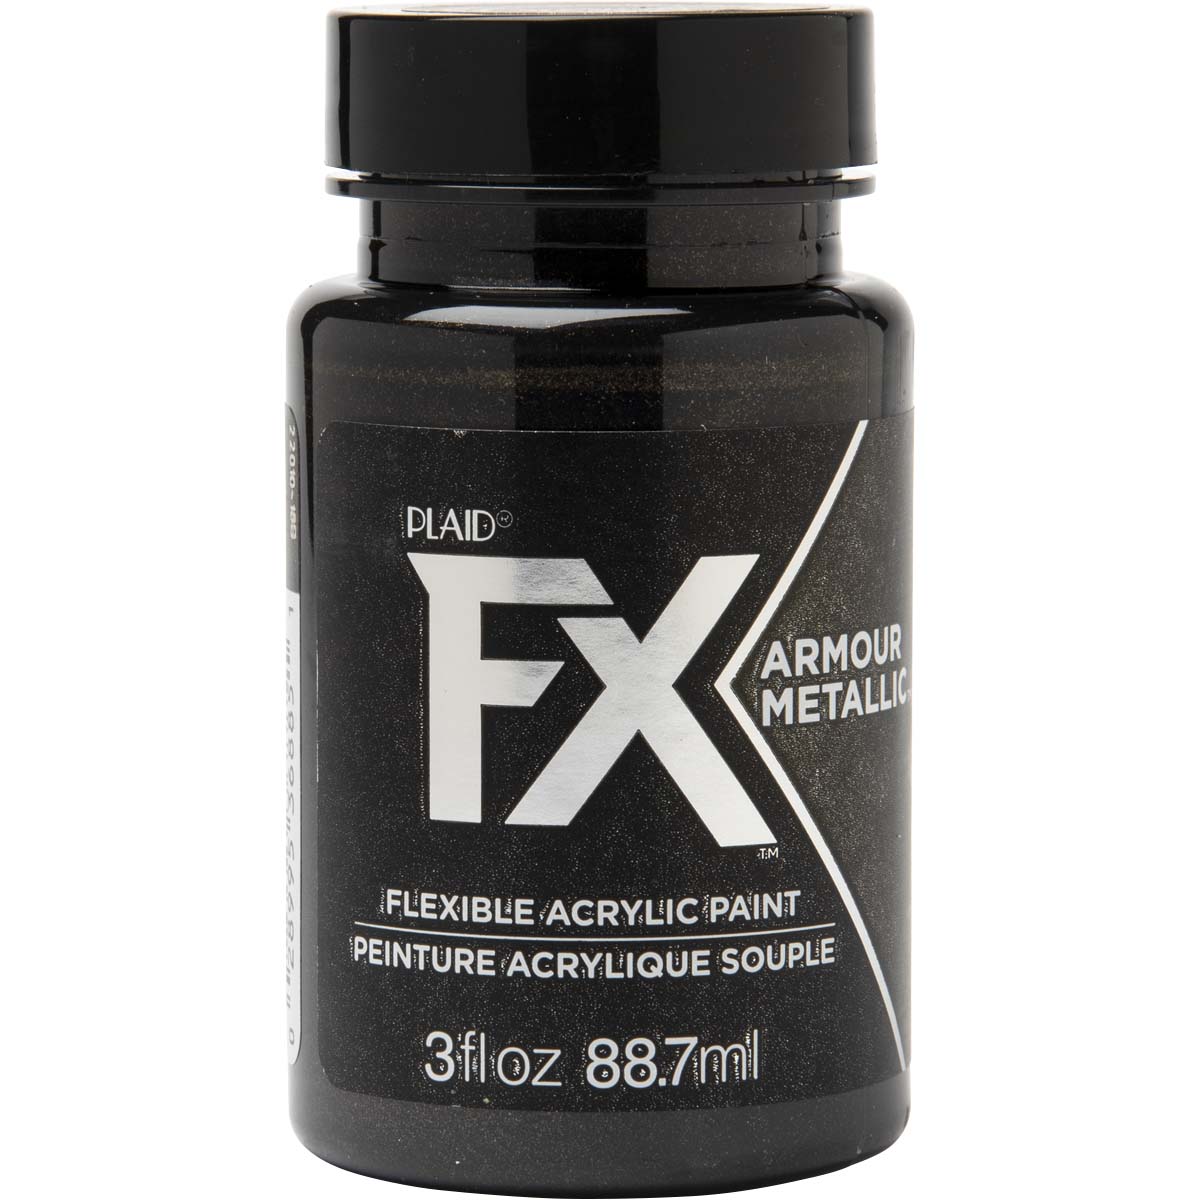 PlaidFX Armour Metal Flexible Acrylic Paint - Gauntlet, 3 oz. - 36885